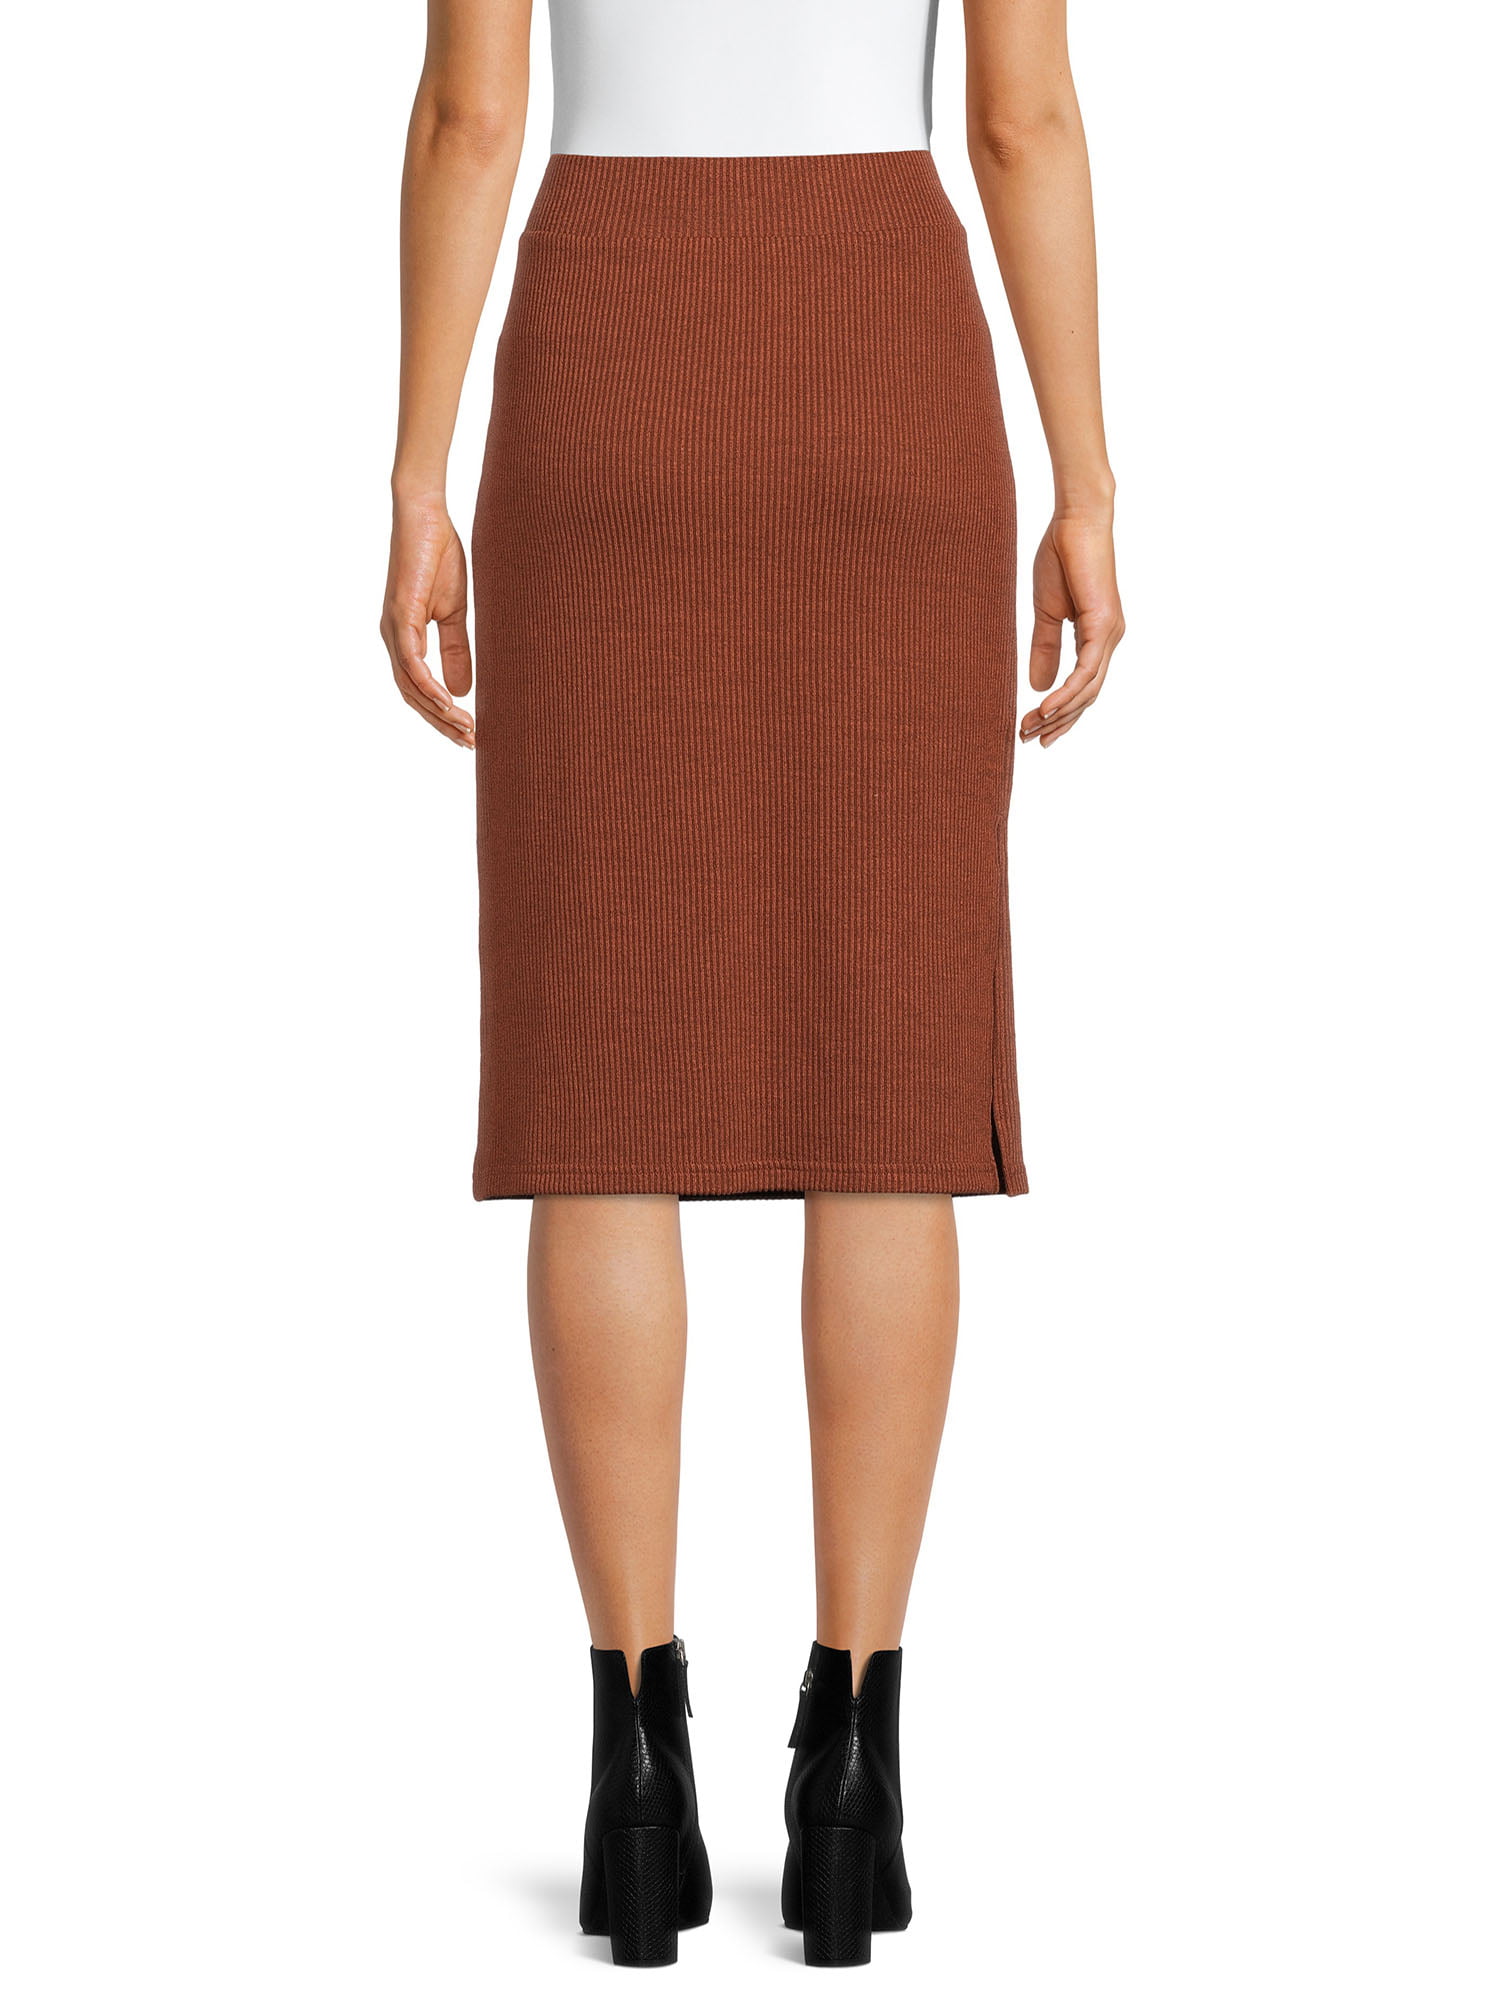 Striped Pencil Skirt for Women Brown Skirt with Slit Knee Length Office Skirt Women Formal Wear Gift for Her Size Medium